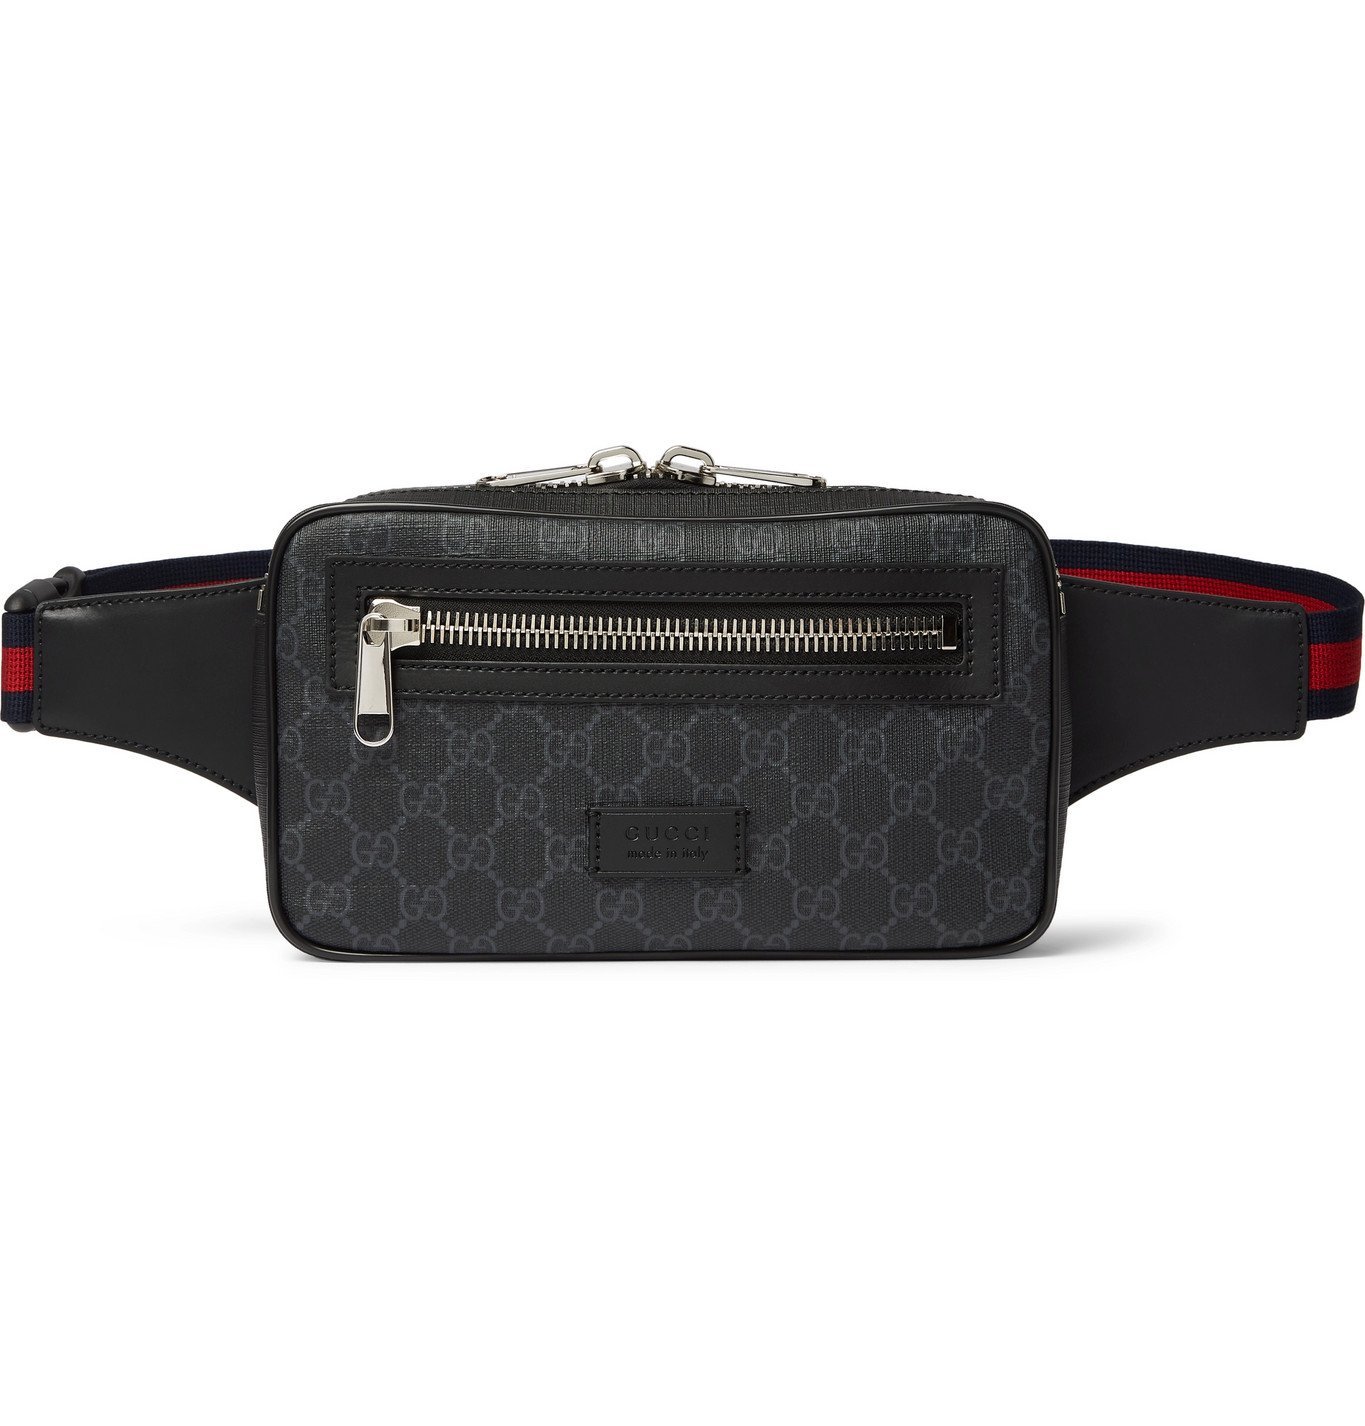 Gucci - Leather-Trimmed Monogrammed Coated-Canvas Belt Bag - Black Gucci